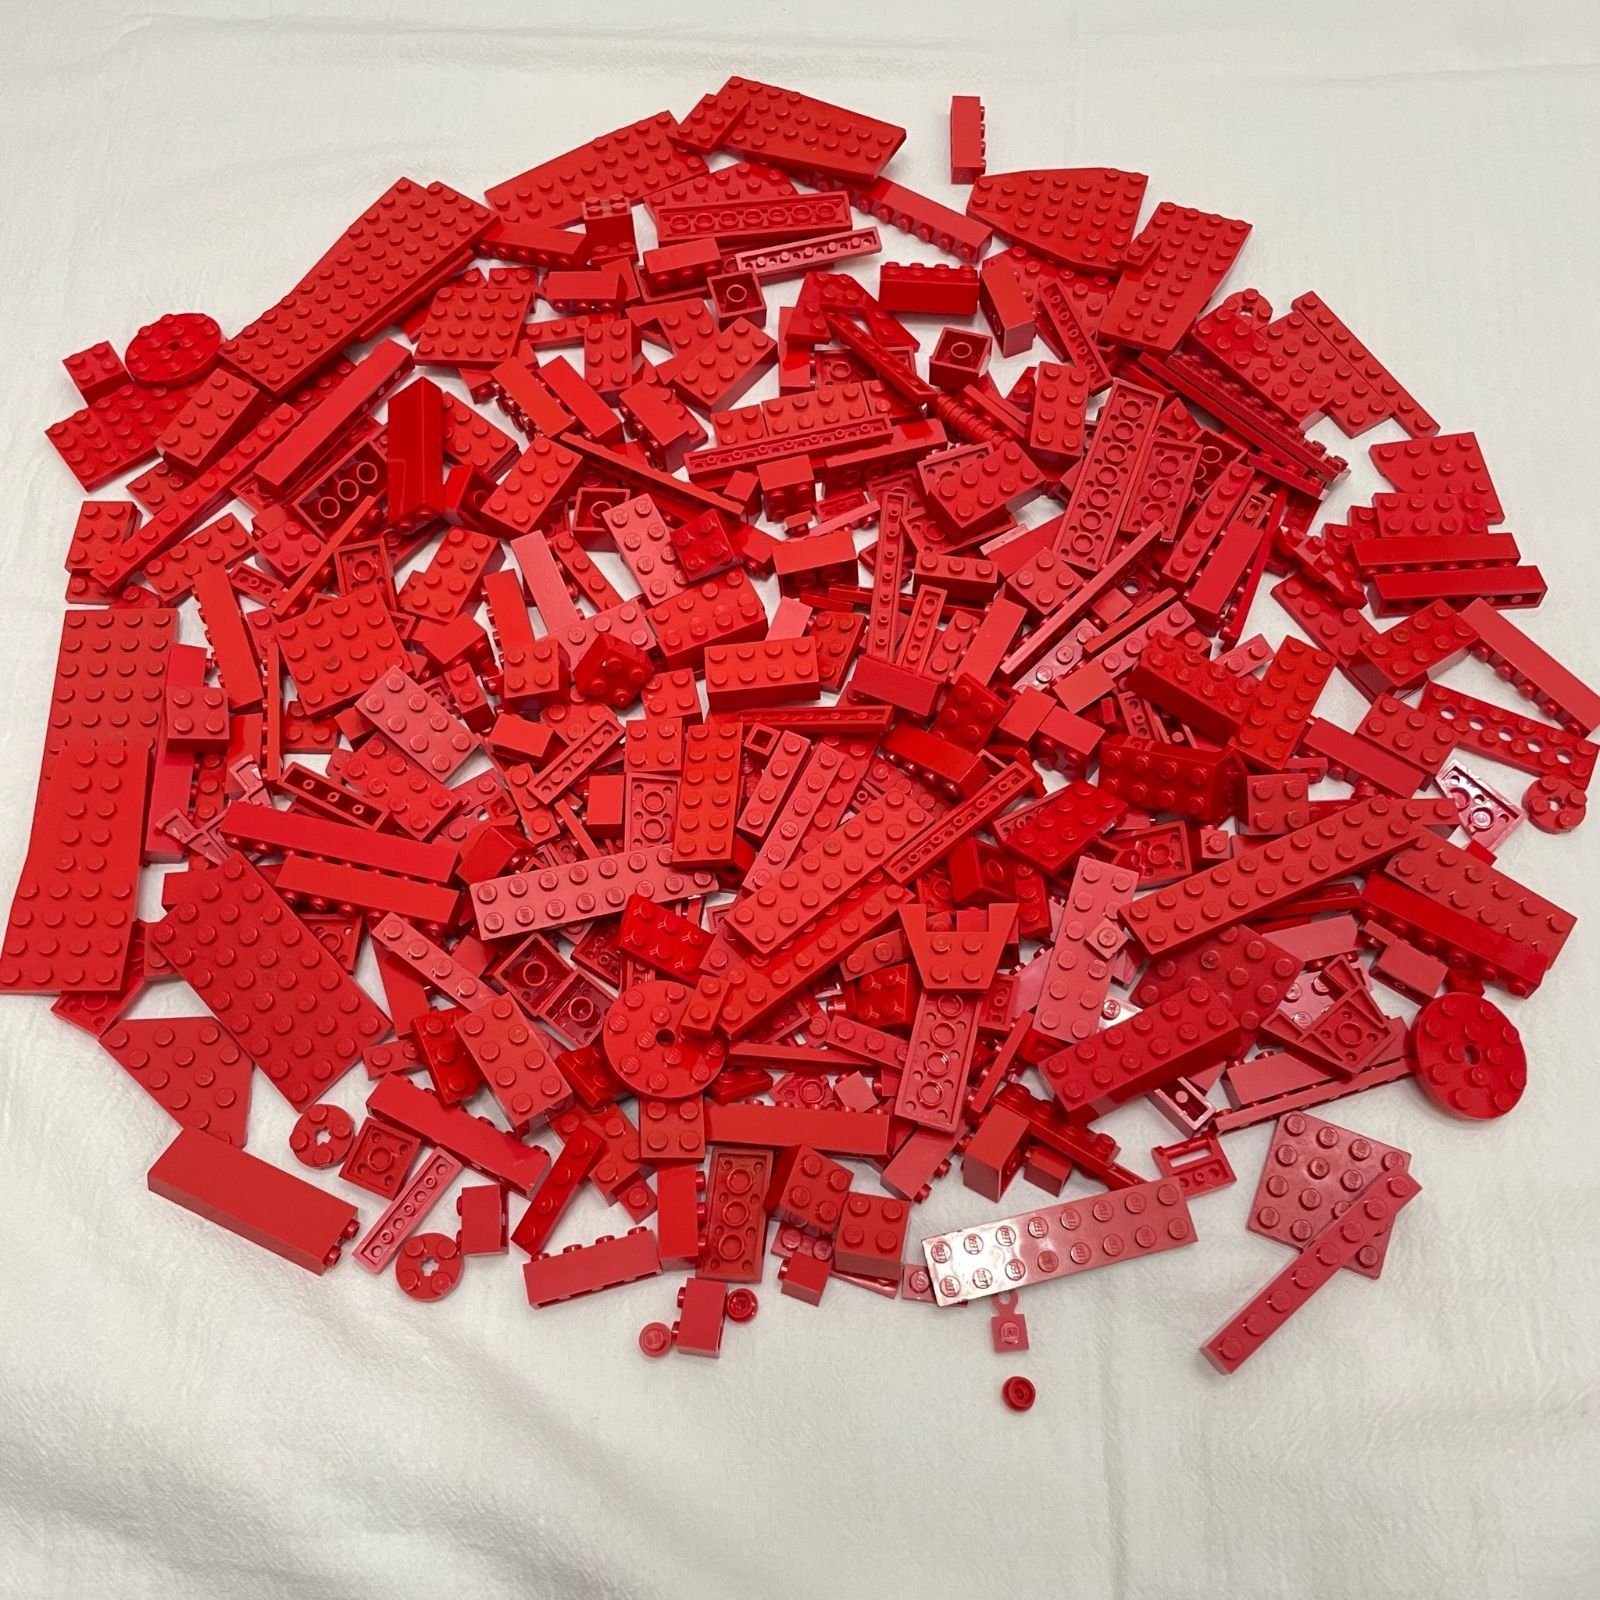 LEGO レゴ 赤 レッド系 中古 パーツ ブロック プレート 大量